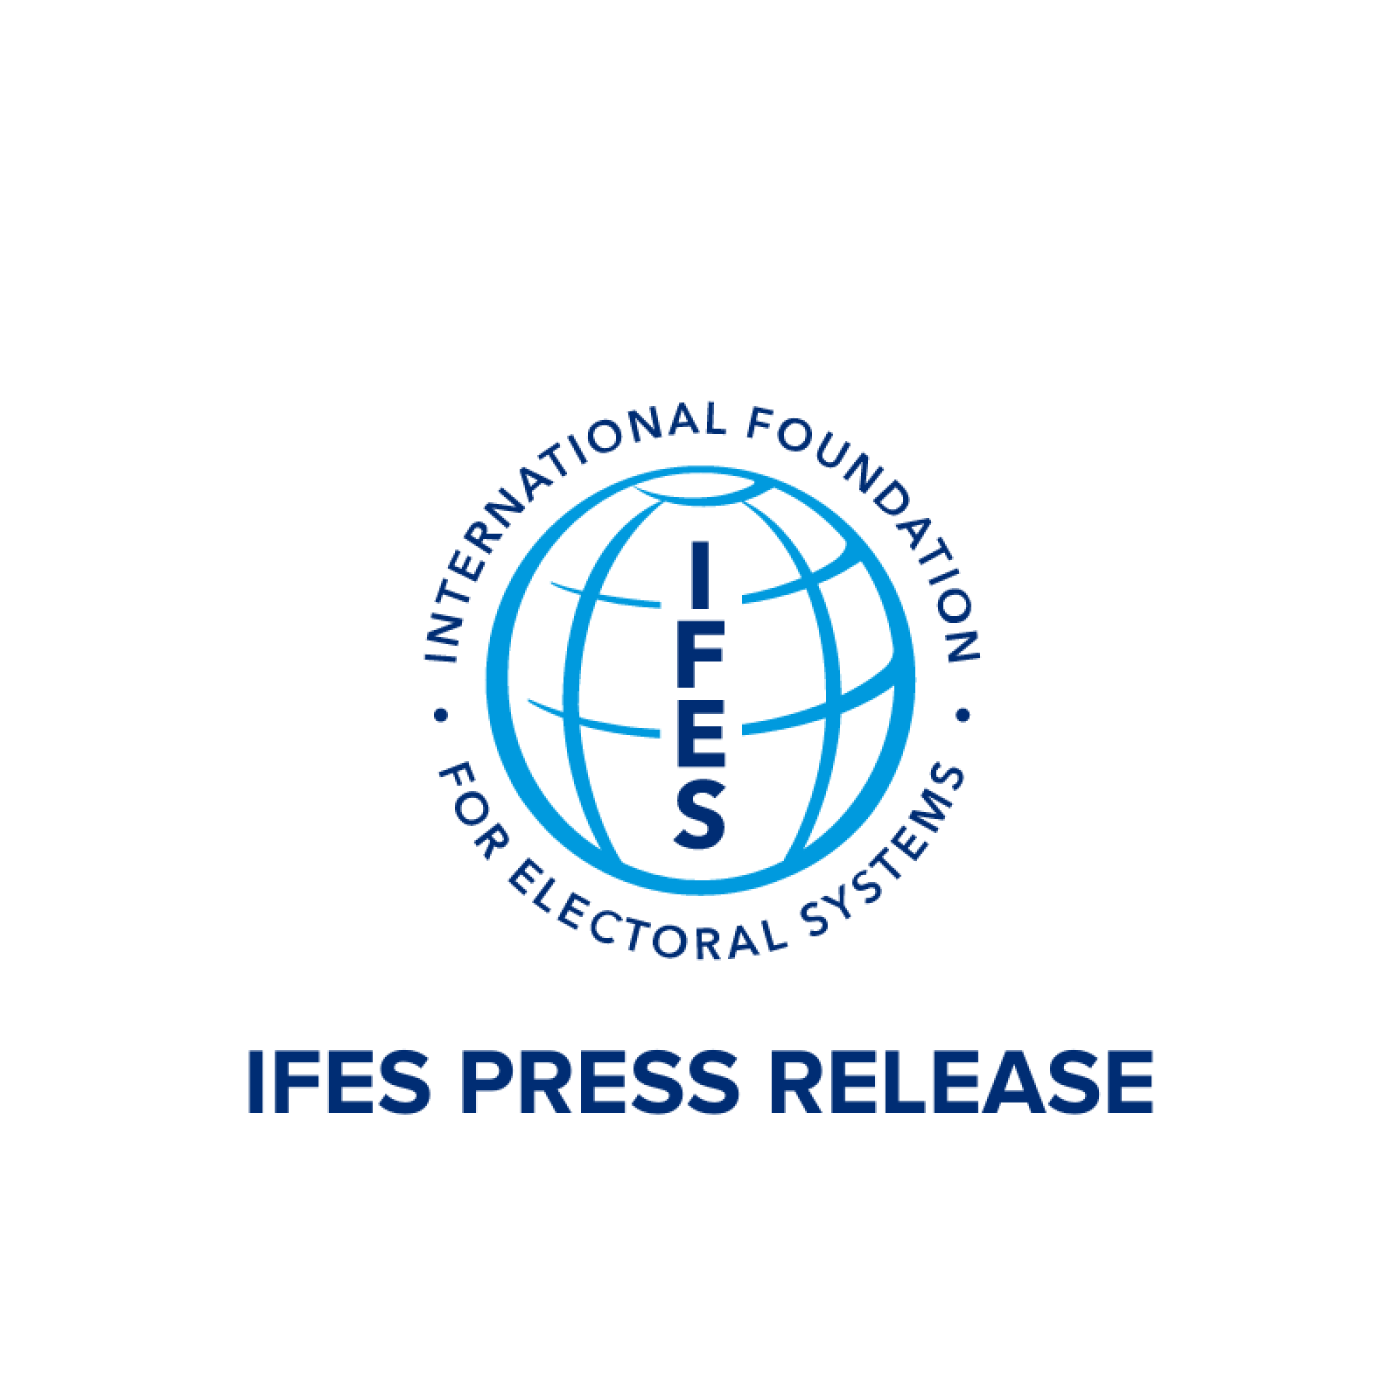 IFES LOGO Press Release written below. 